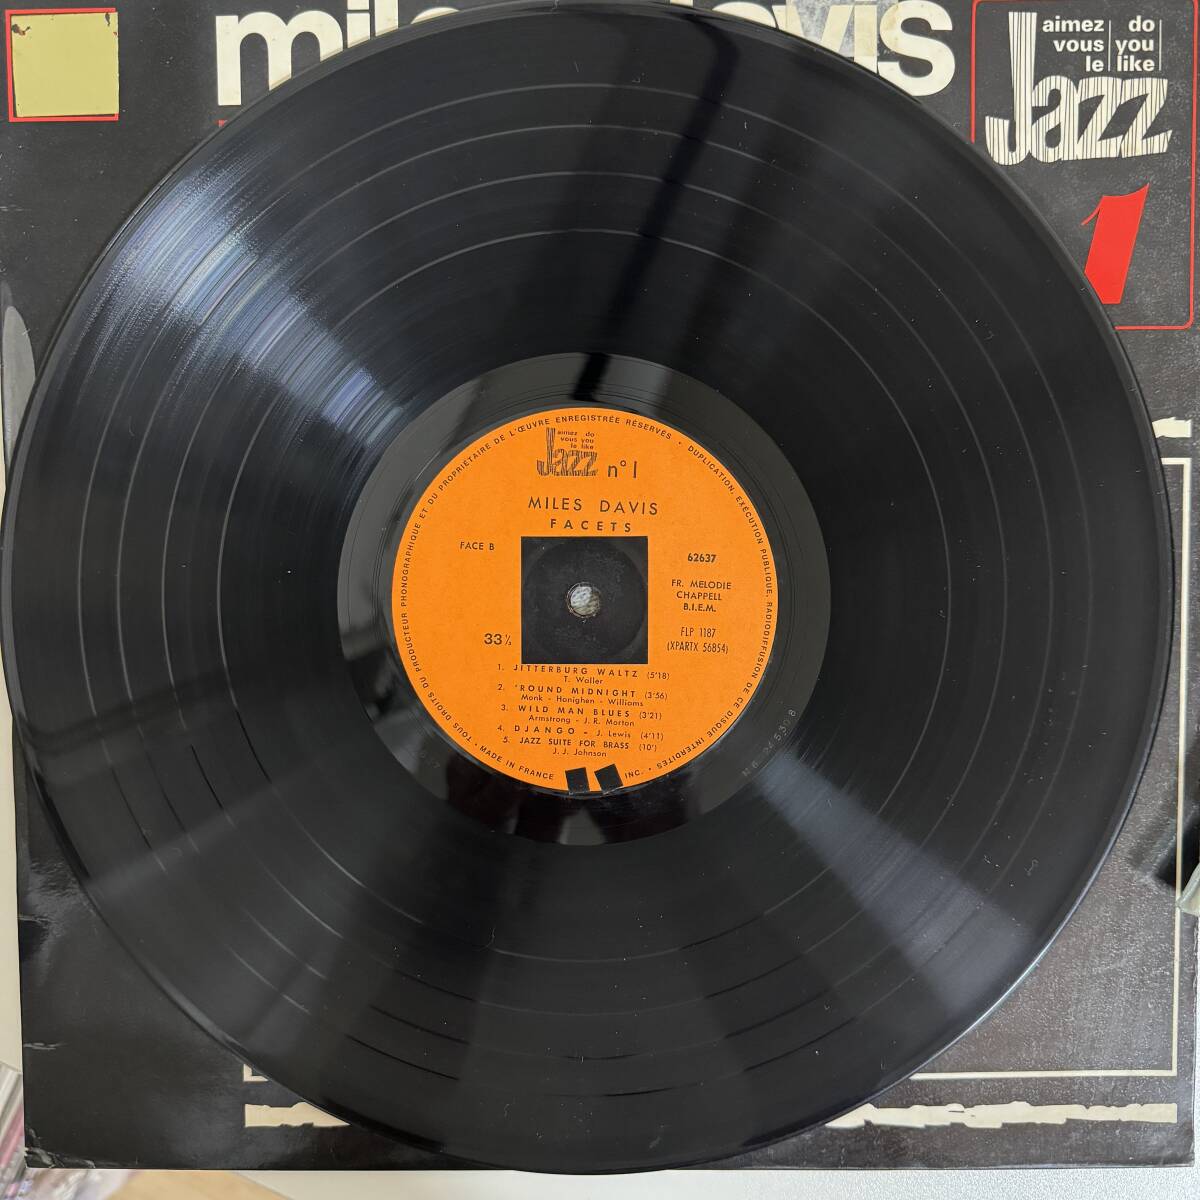 Miles Davis Facets マイルスデイビス - ファセッツ 12インチ レコードアルバム JP 13811